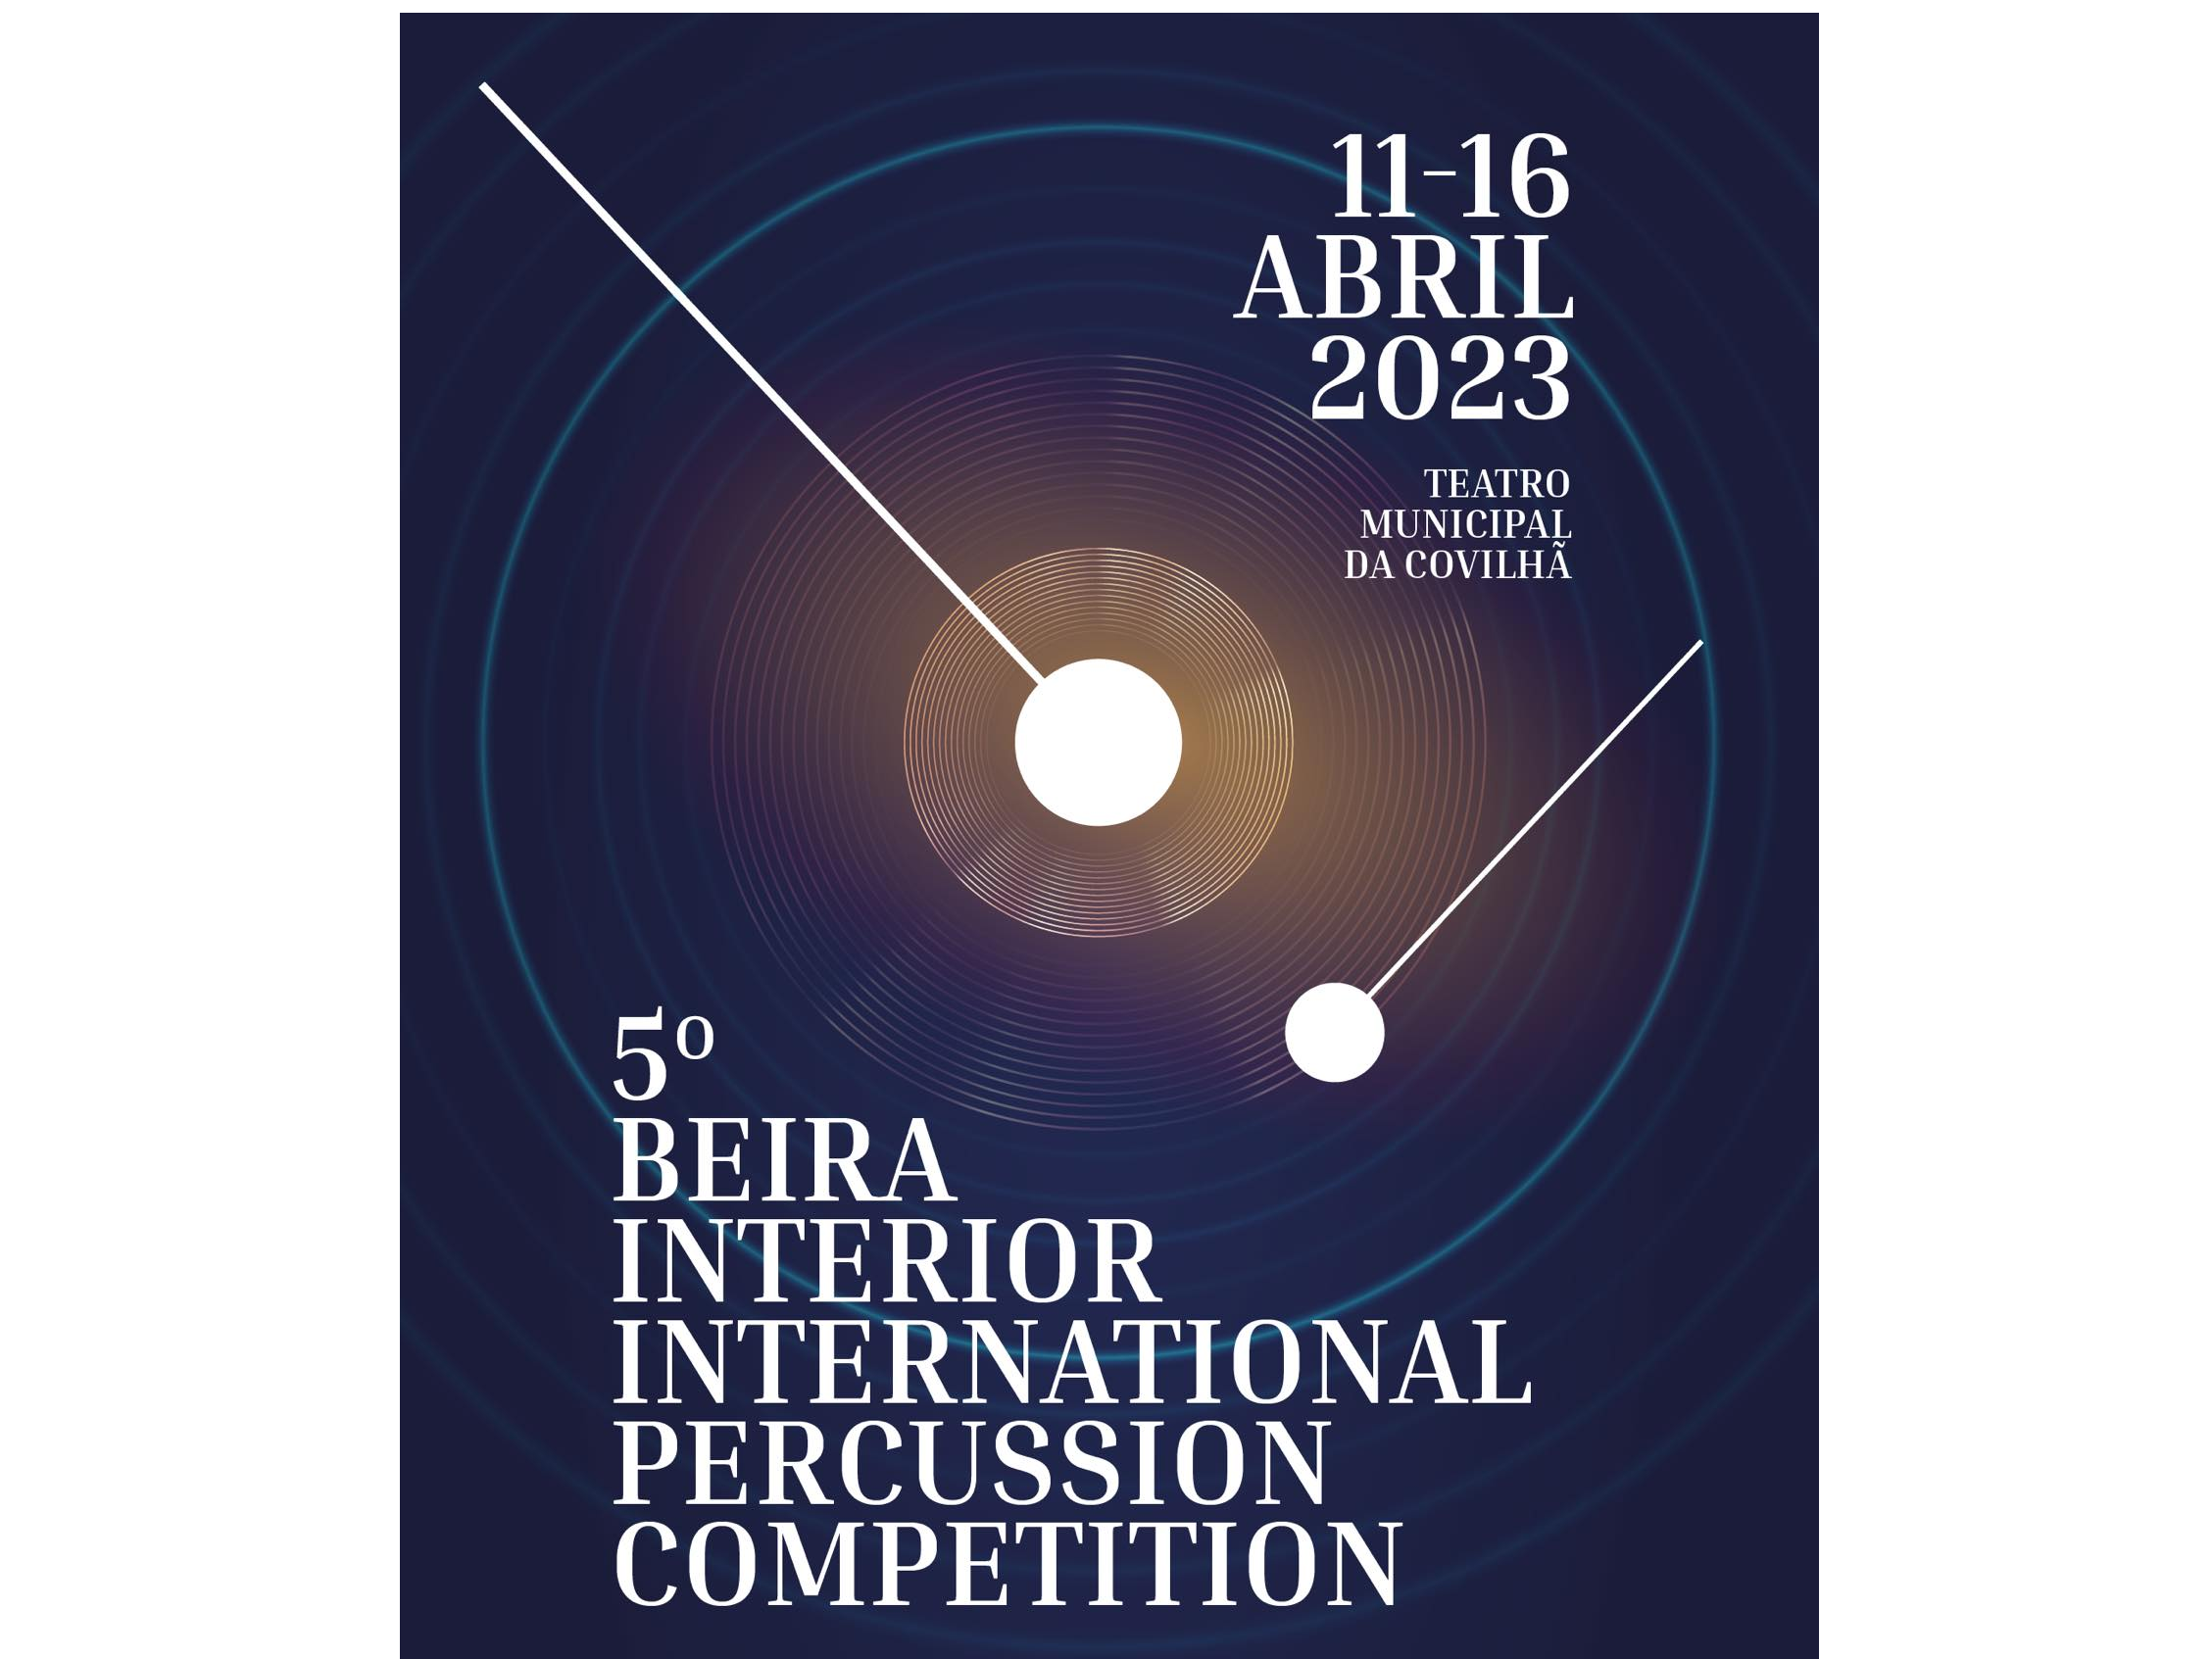 Concurso Internacional de Percussão da Beira Interior